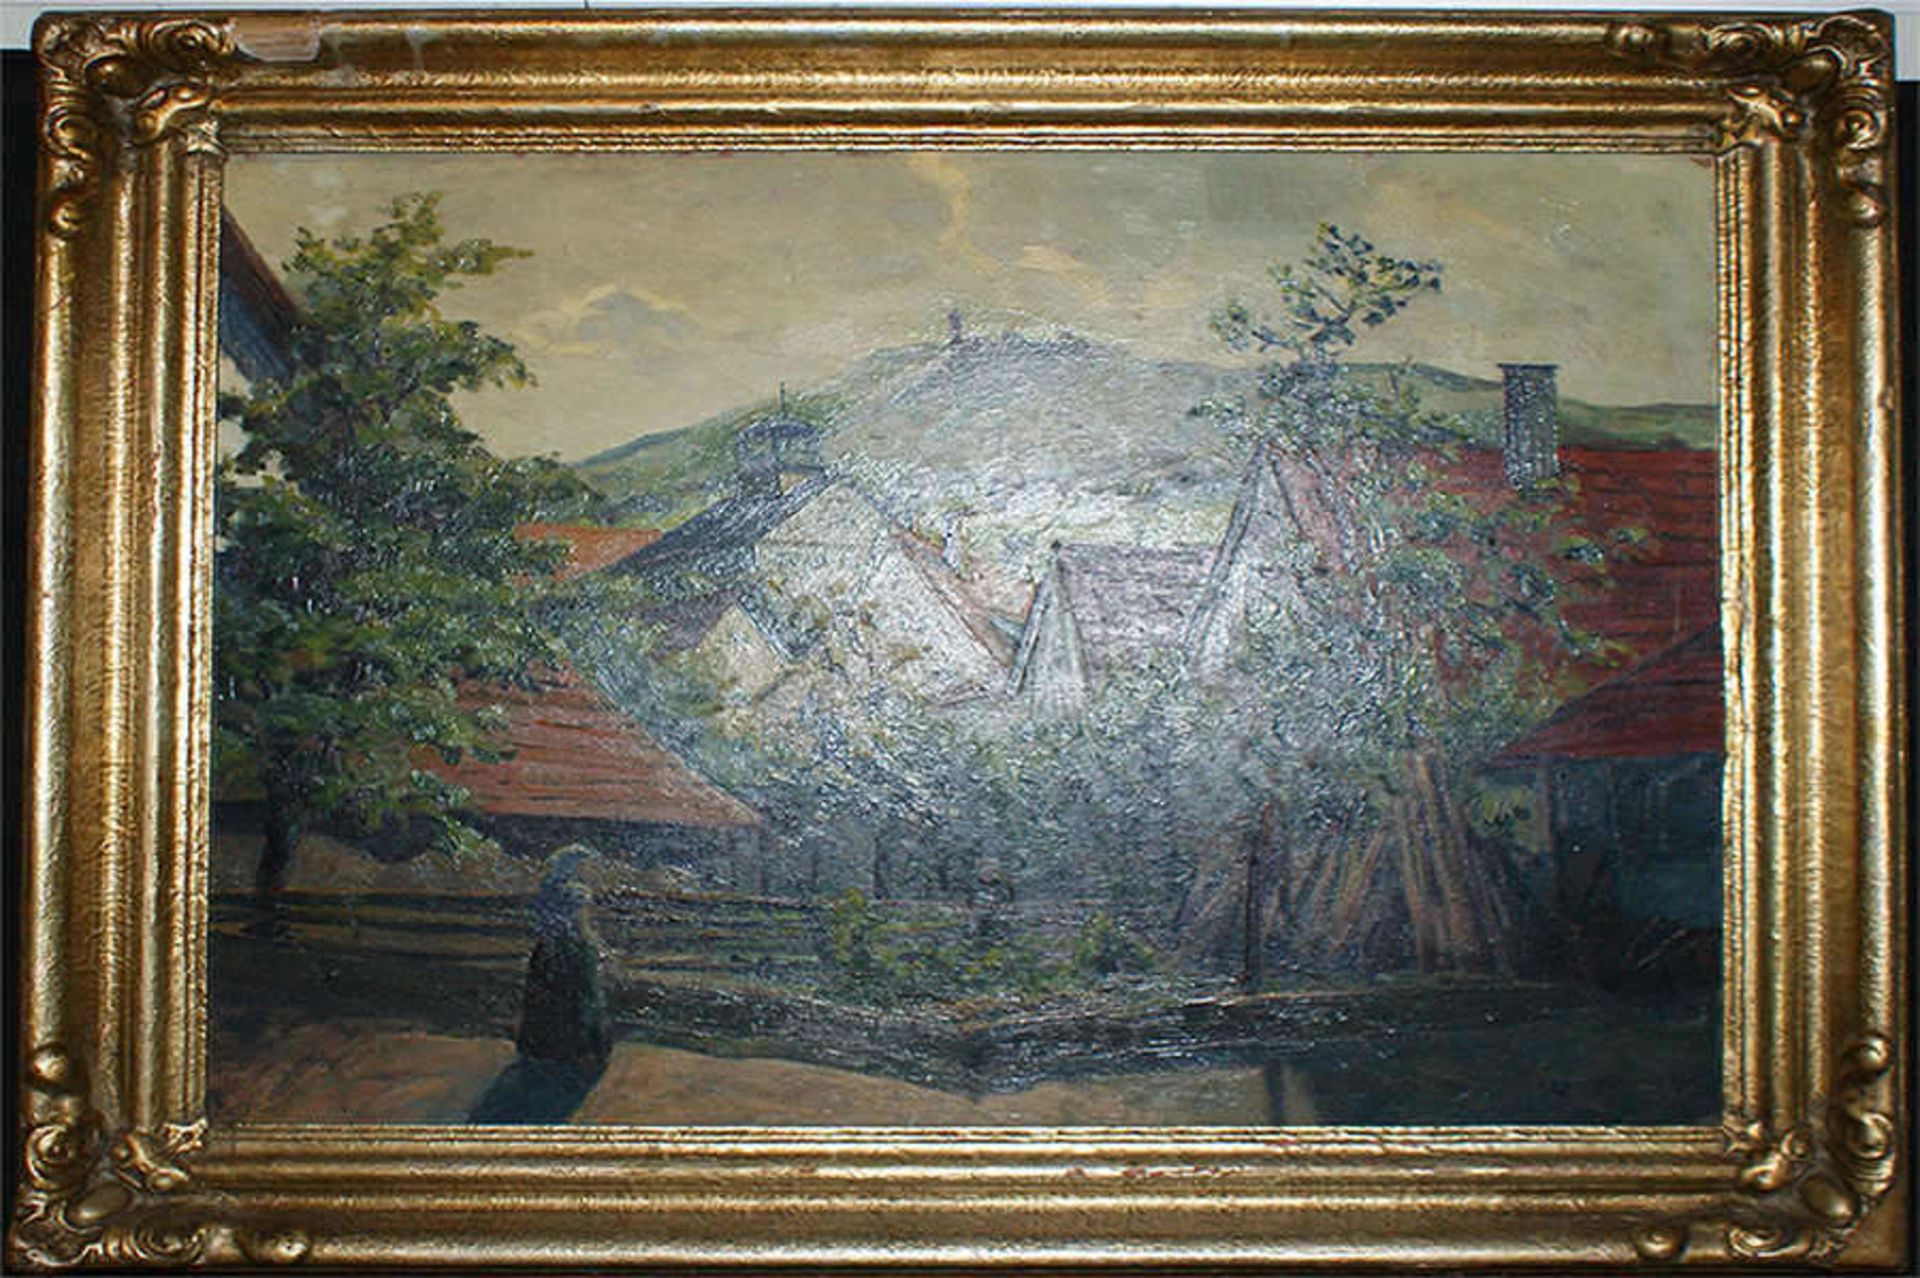 Monogrammist W.M., Ölgemälde auf Malkarton, "Frühlingsidylle im Dorf mit Blick auf Burg", rechts